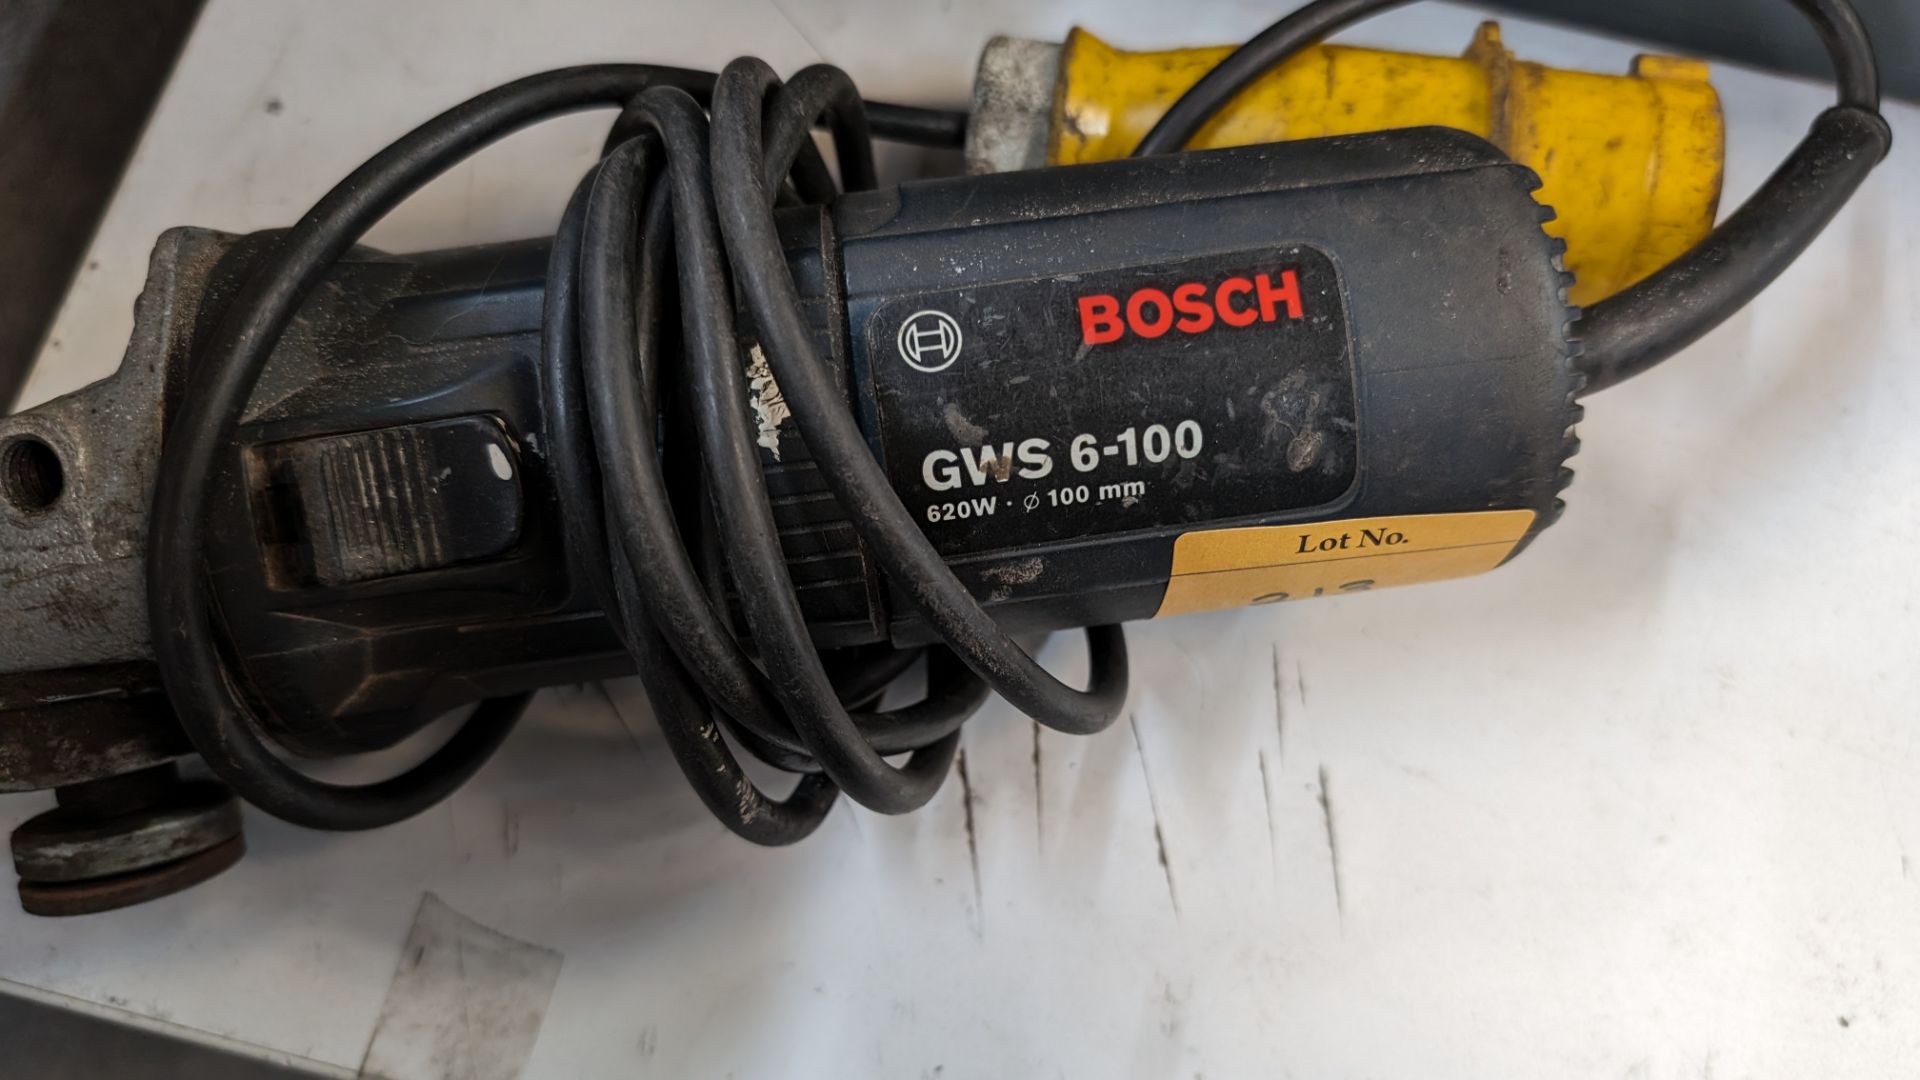 Bosch model GWS 6-100 110V angle grinder - Image 3 of 6